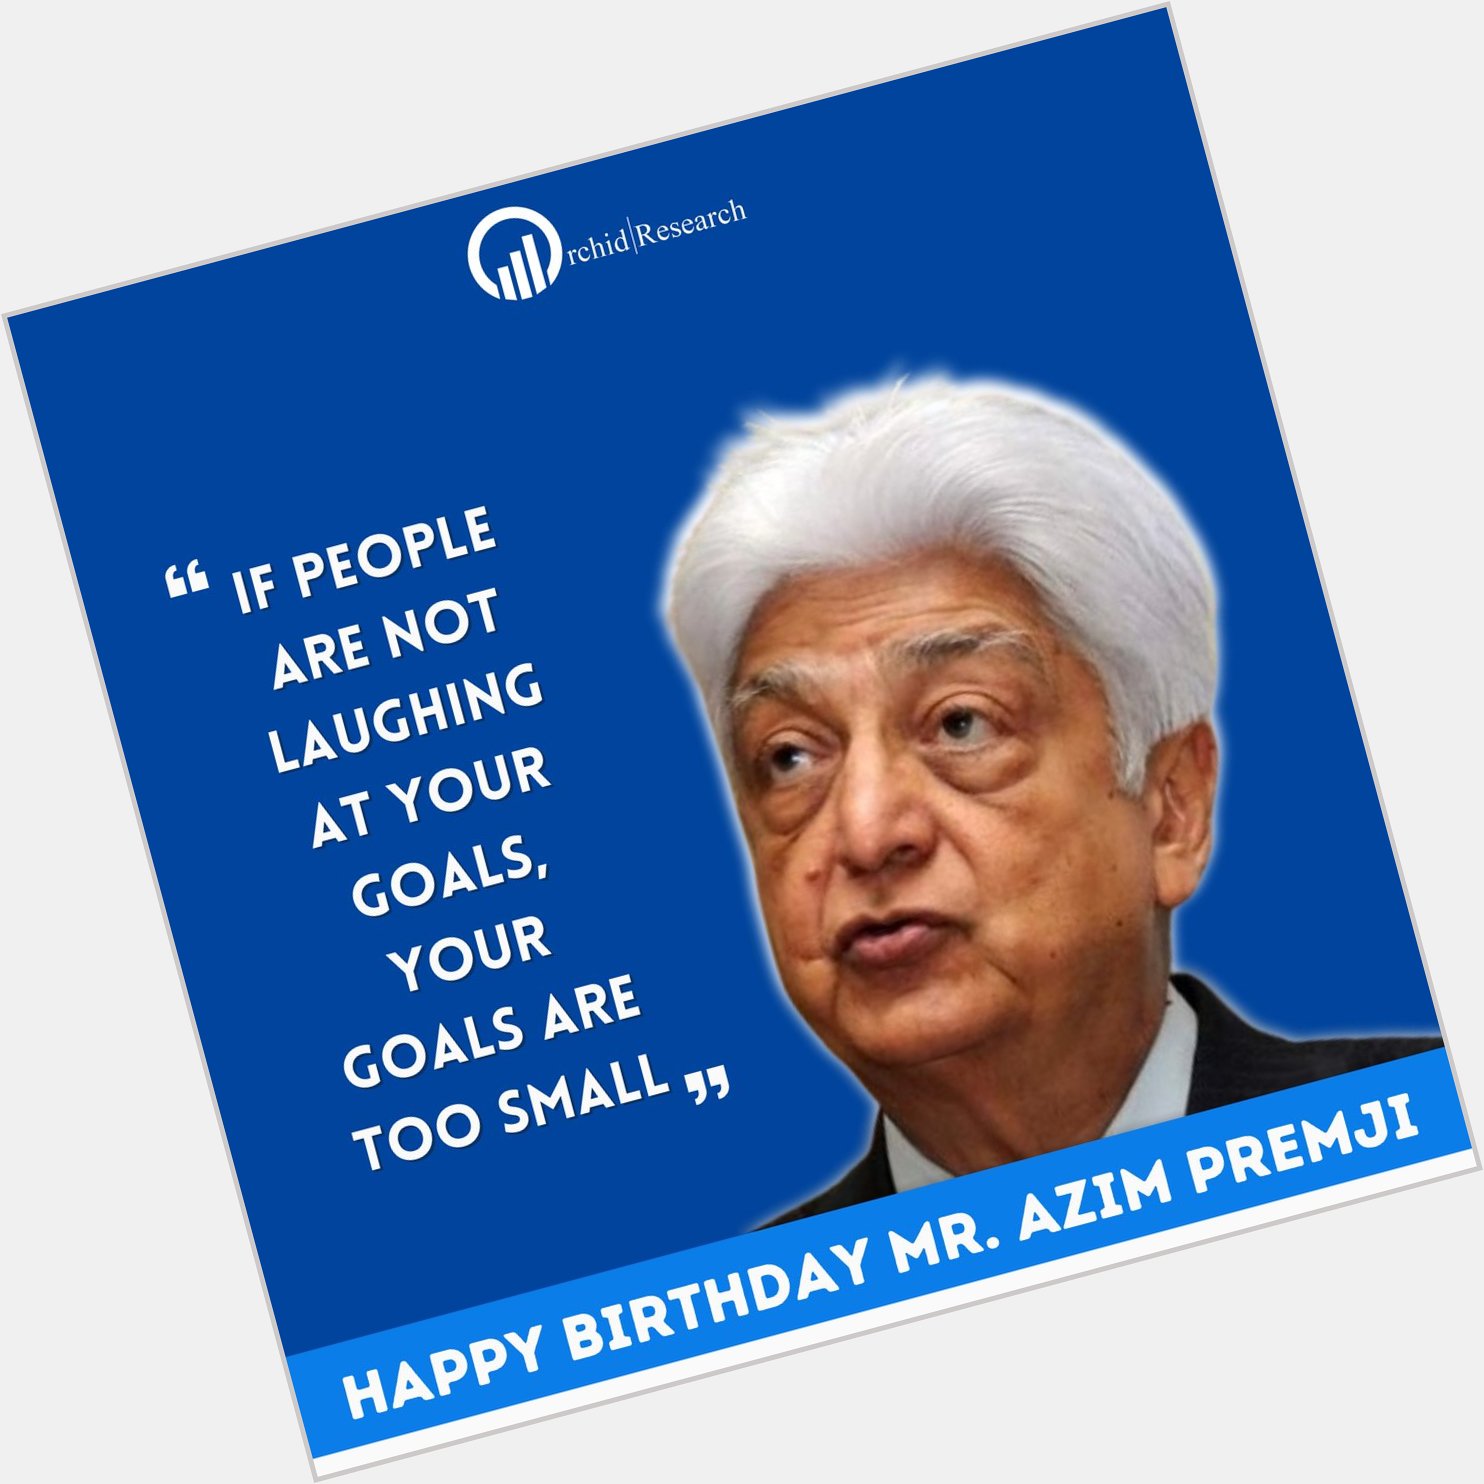 Happy Birthday Mr. Azim Premji    